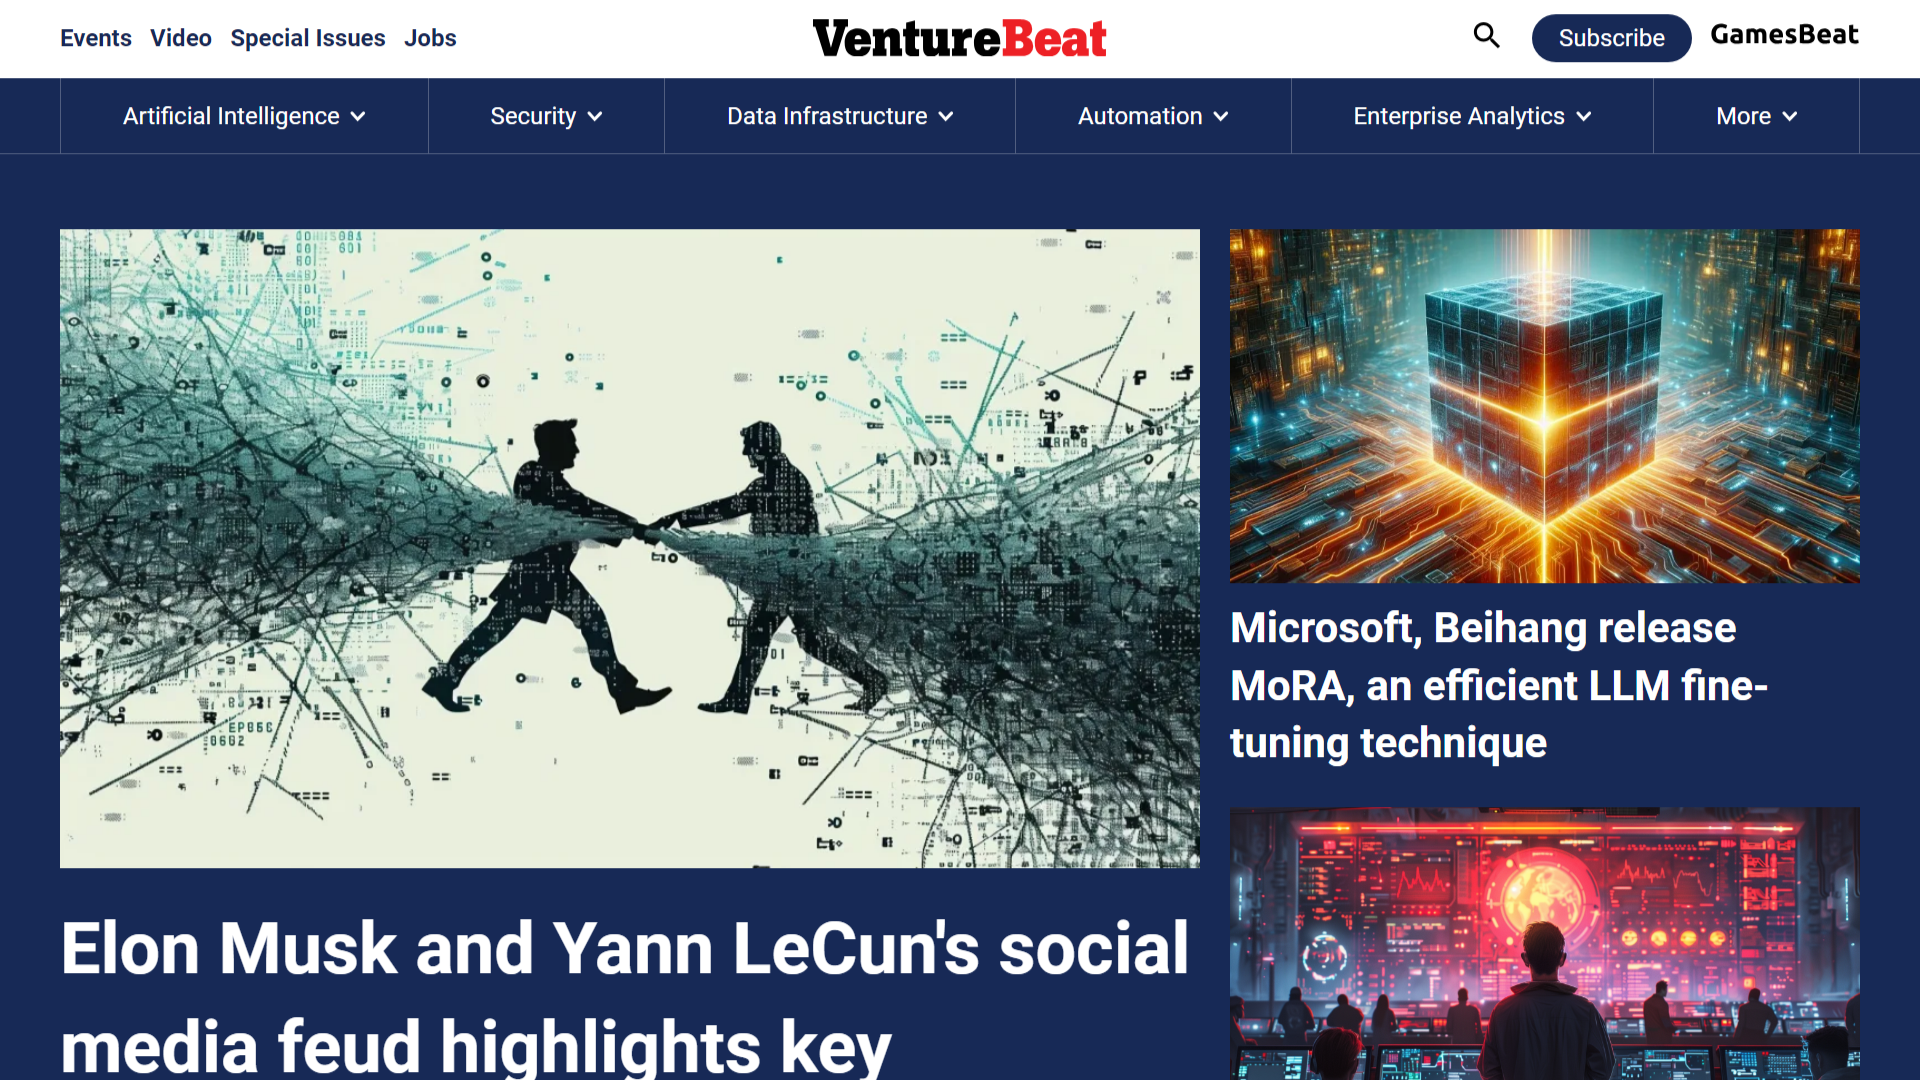 Venture beat: A tech website